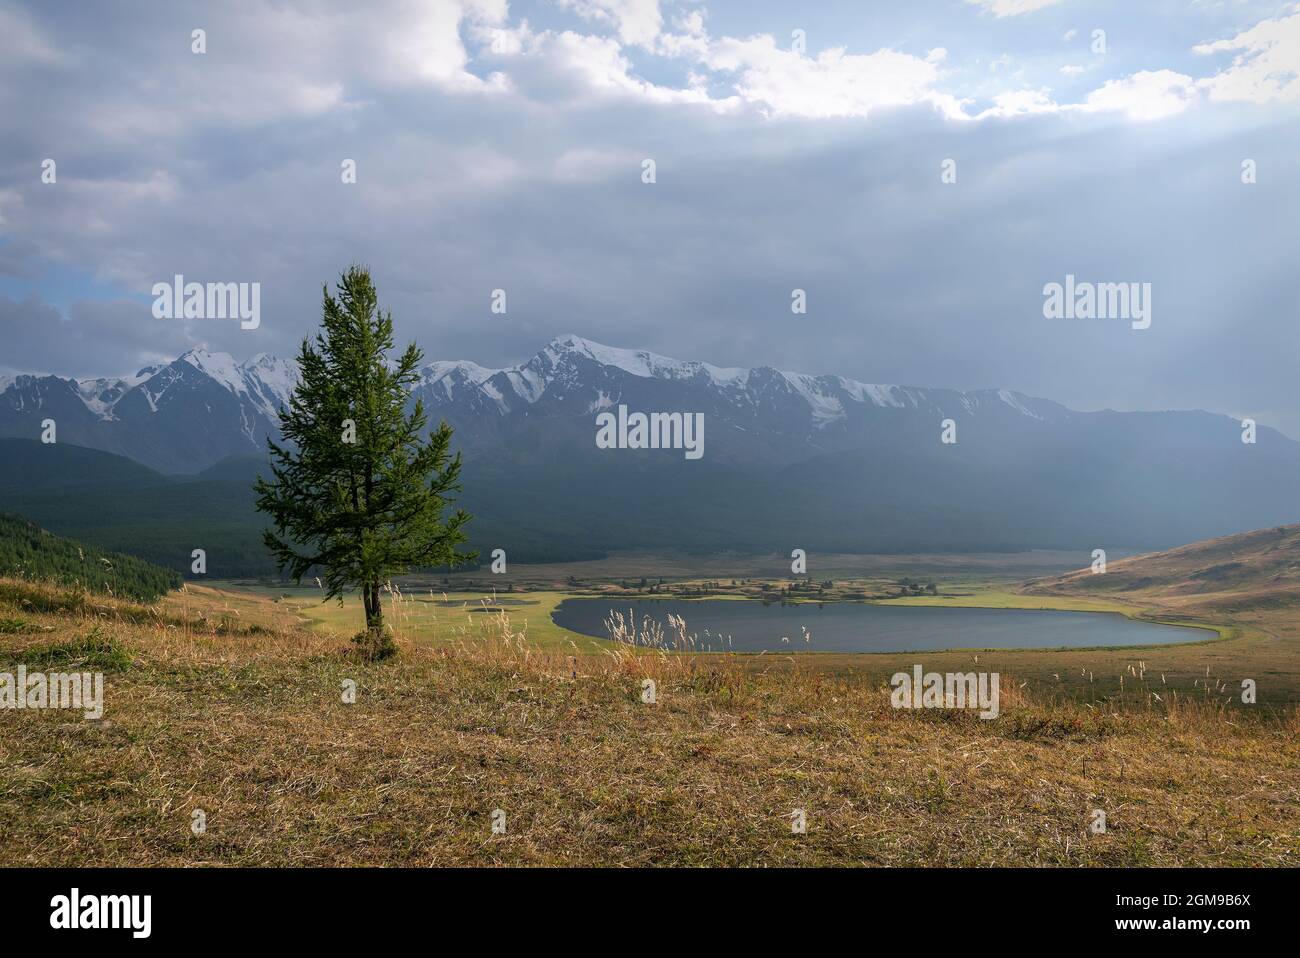 Splendida vista con raggi di sole e luce attraverso le nuvole sul lago, montagne coperte di neve e foresta e larice in primo piano. Altai, Foto Stock